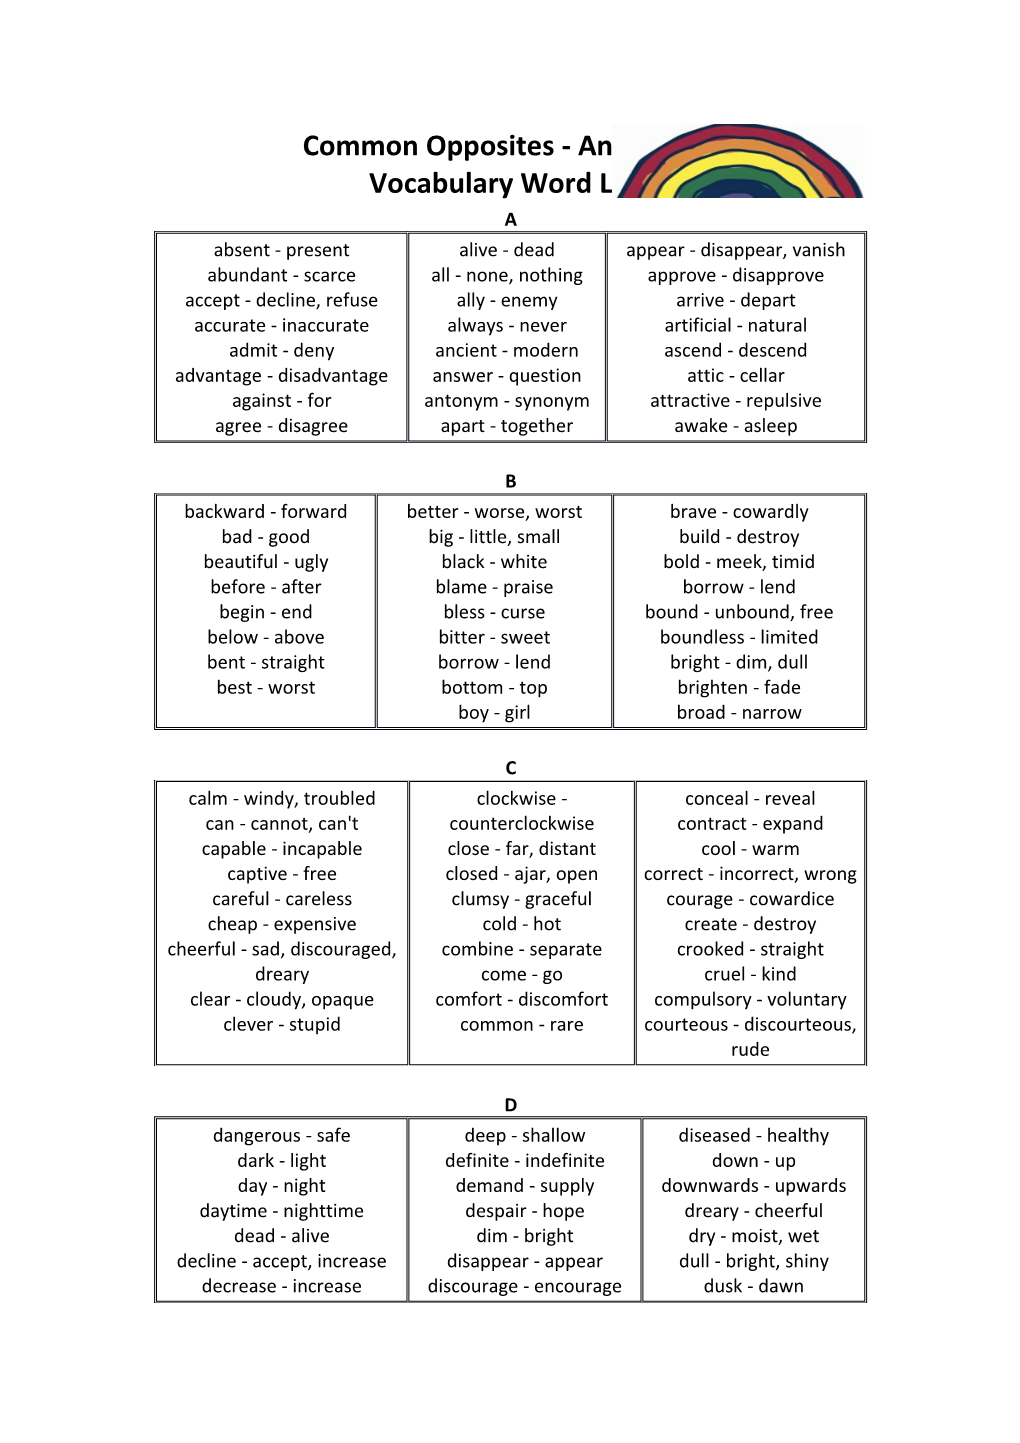 Common Opposites - Antonyms Vocabulary Word List